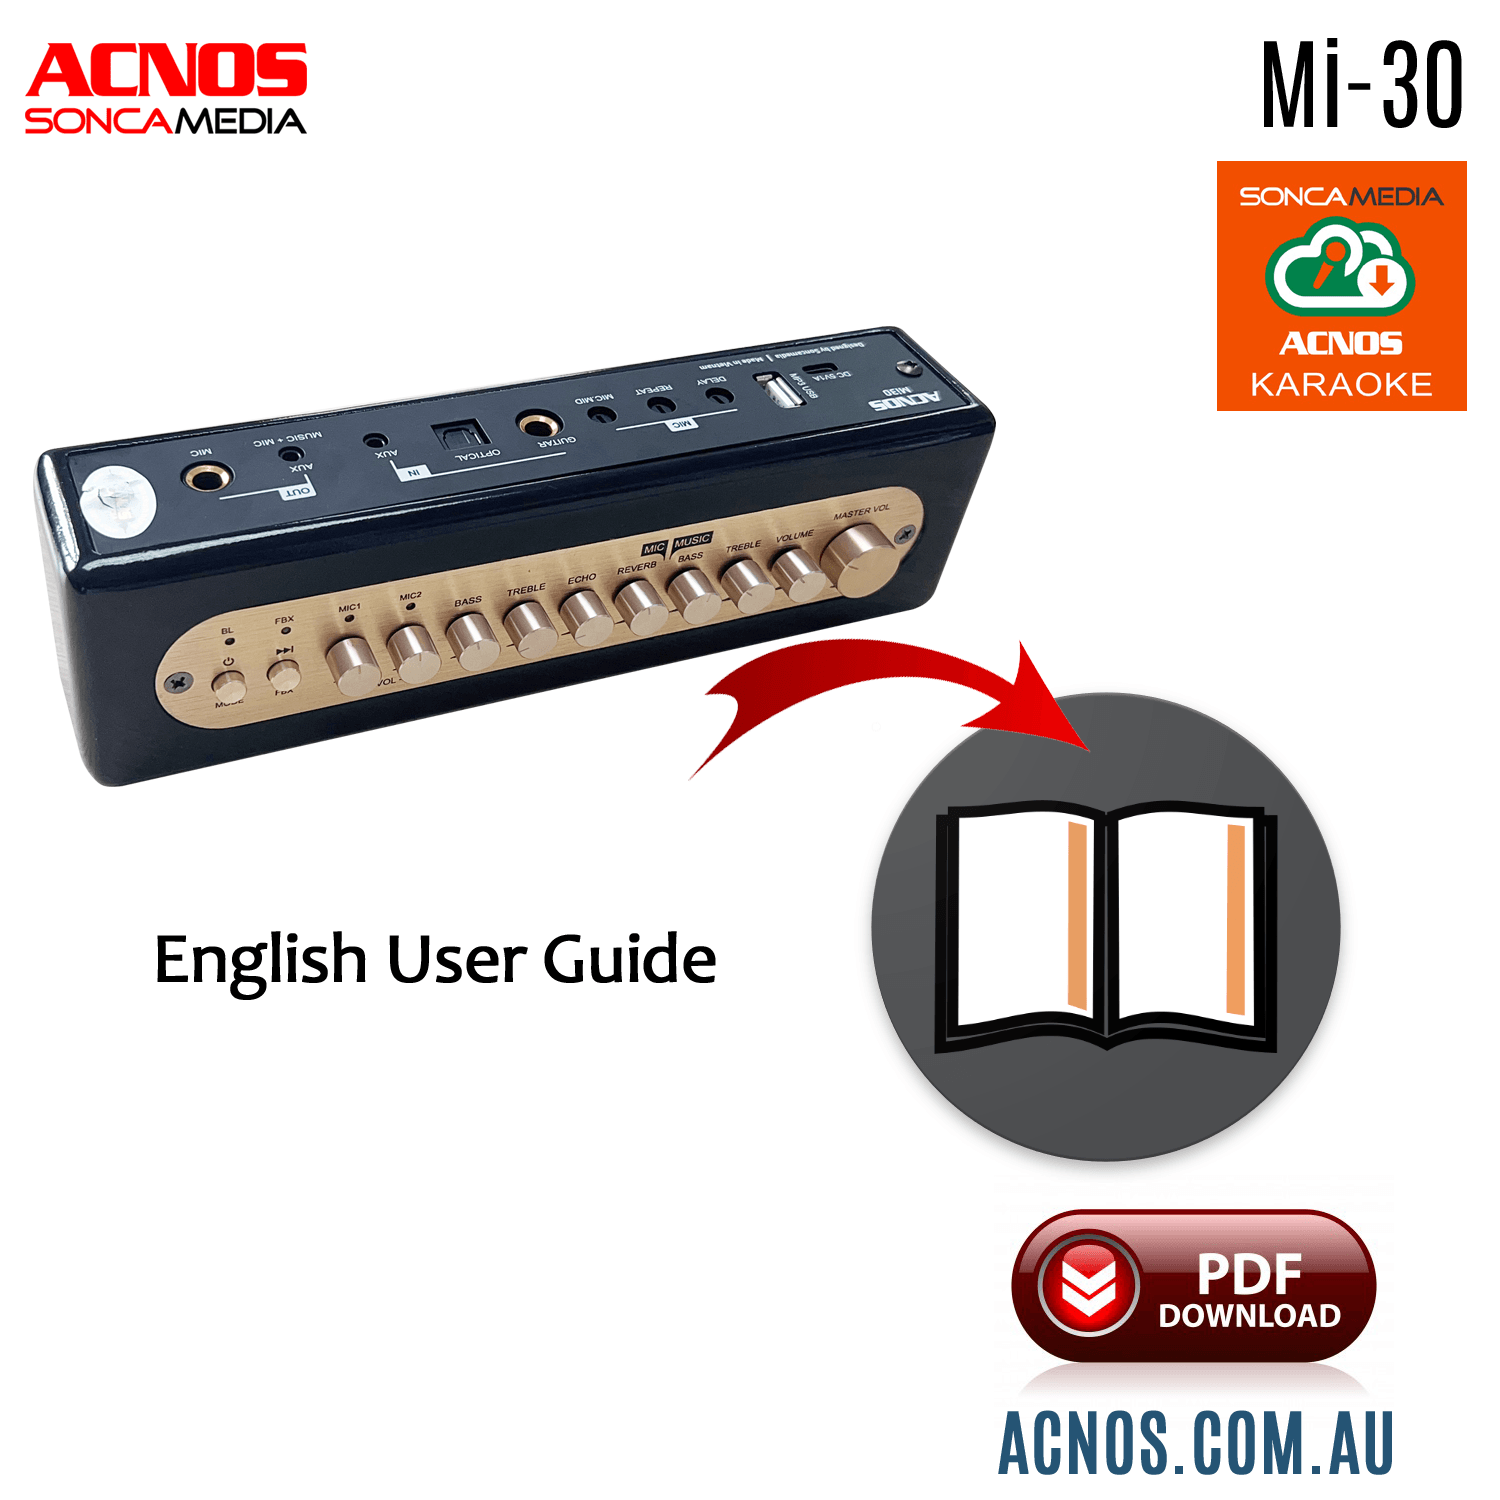 How To Connect Guide - ACNOS Mi-30 Compact Portable Karaoke Mixer - Karaoke Home Entertainment